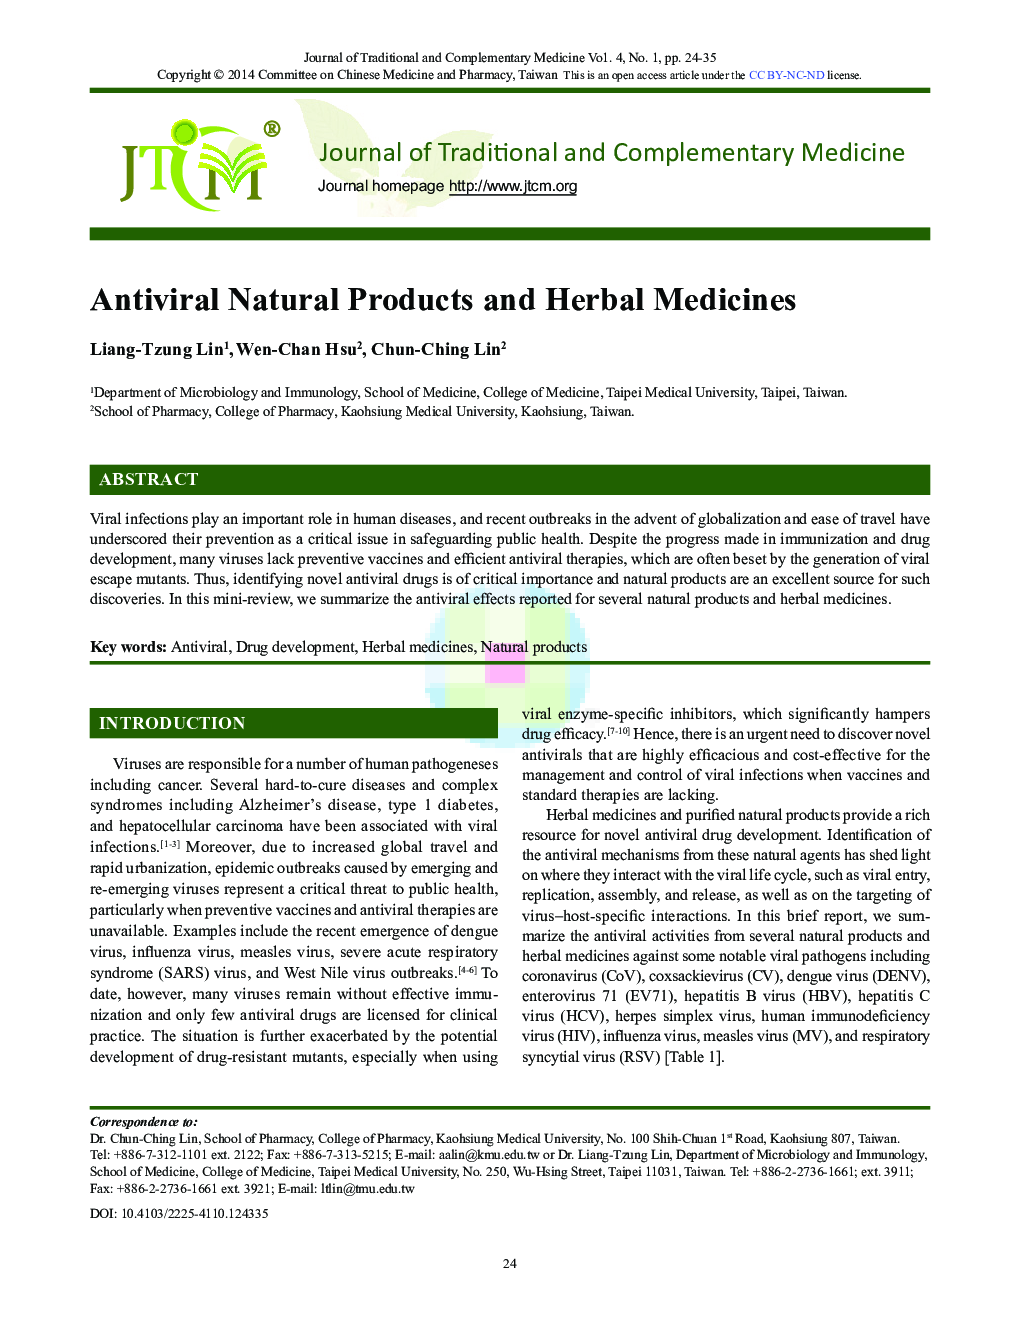 Antiviral Natural Products and Herbal Medicines